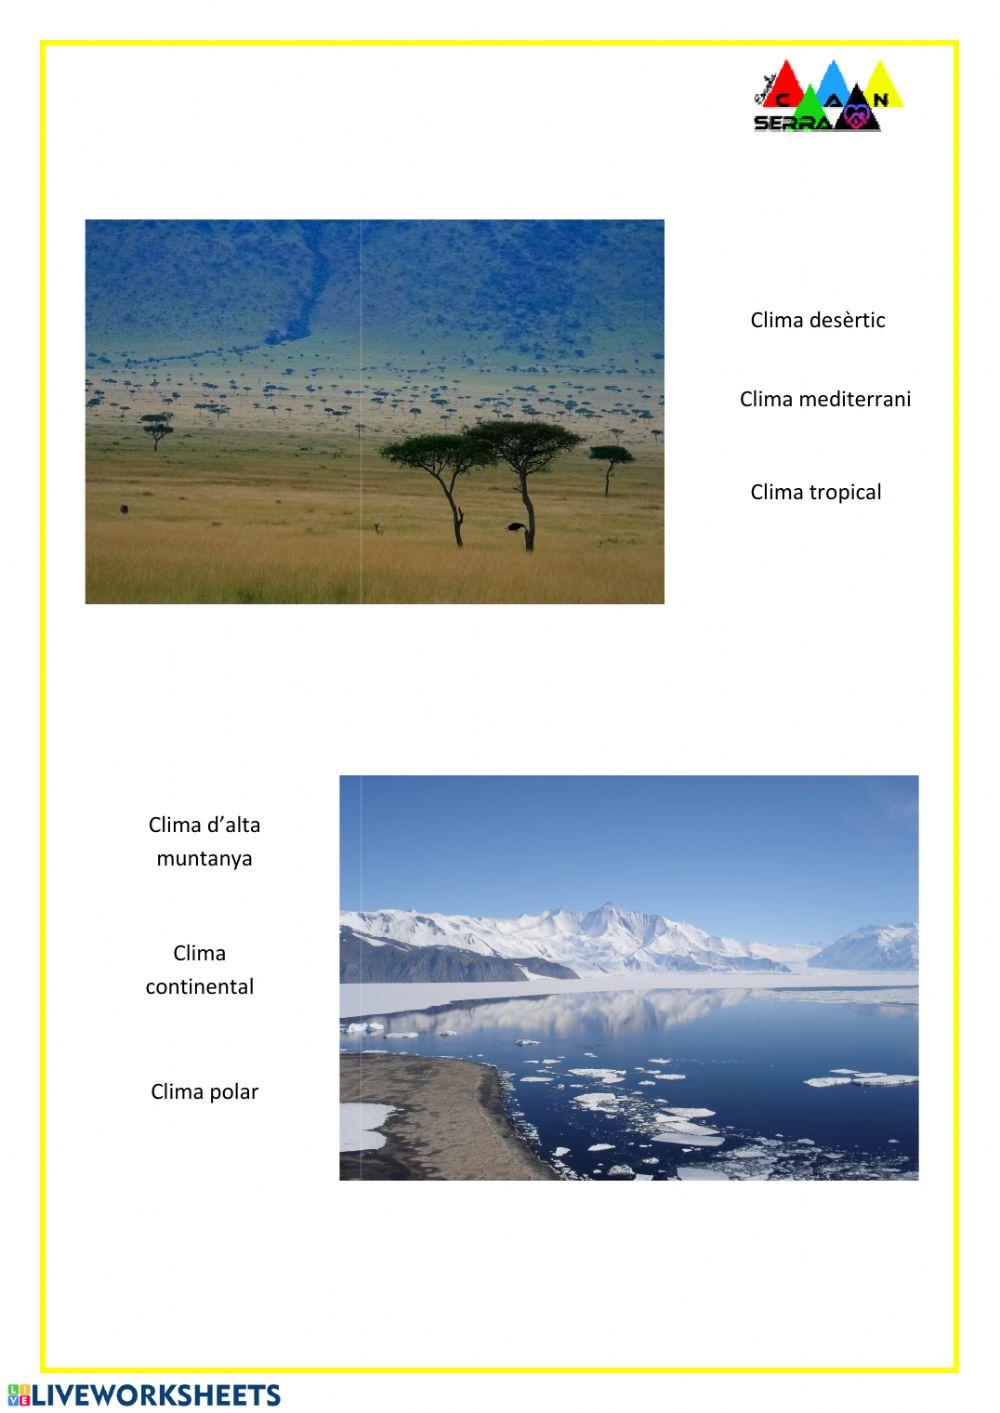 Identifiquem els paisatges dels diferents climes